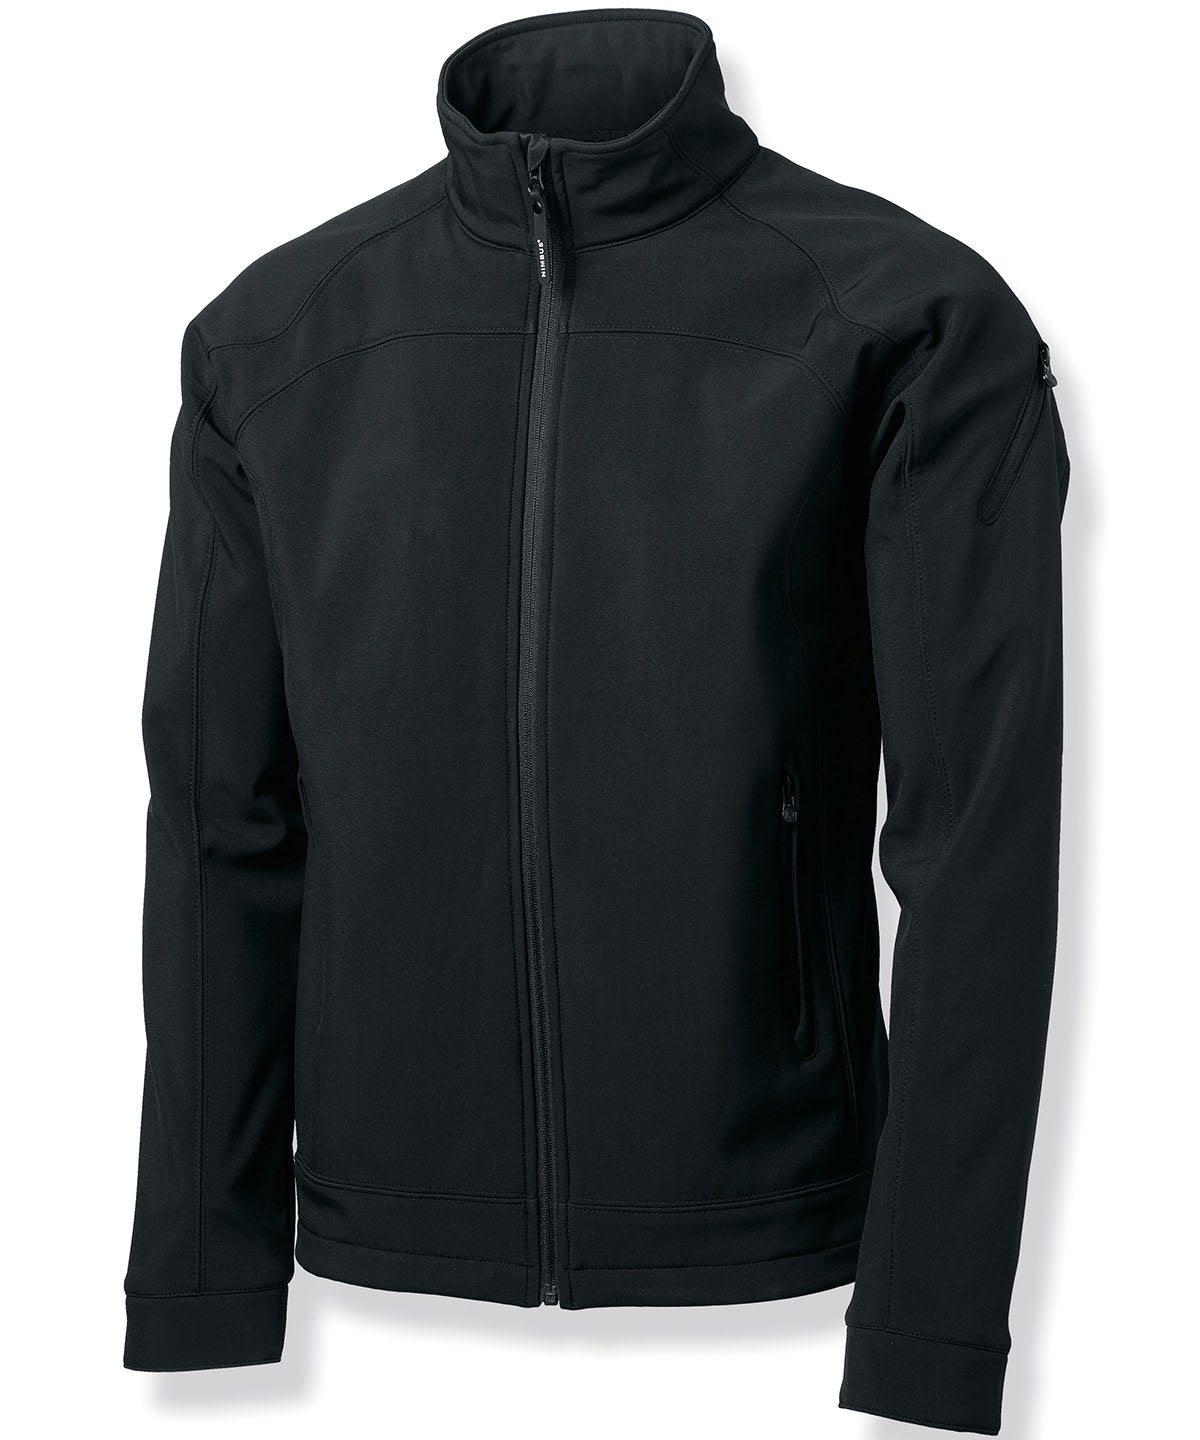 Nimbus Duxbury – fashionable performance softshell jacket